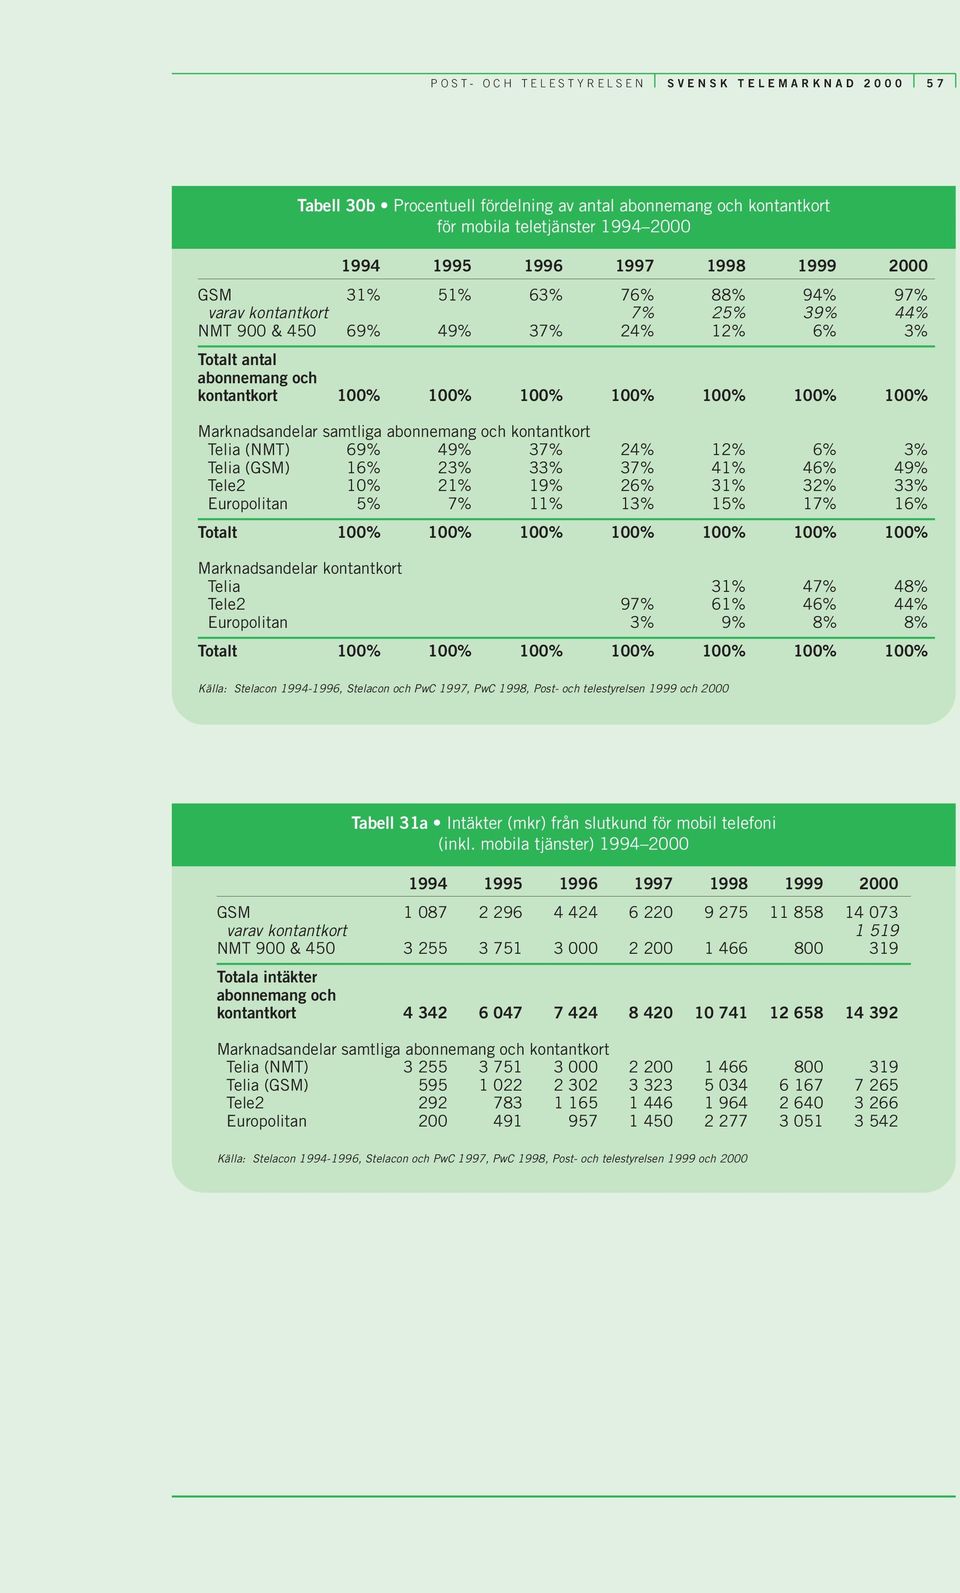 (NMT) 69% 49% 37% 24% 12% 6% 3% Telia (GSM) 16% 23% 33% 37% 41% 46% 49% Tele2 10% 21% 19% 26% 31% 32% 33% Europolitan 5% 7% 11% 13% 15% 17% 16% Totalt 100% 100% 100% 100% 100% 100% 100%